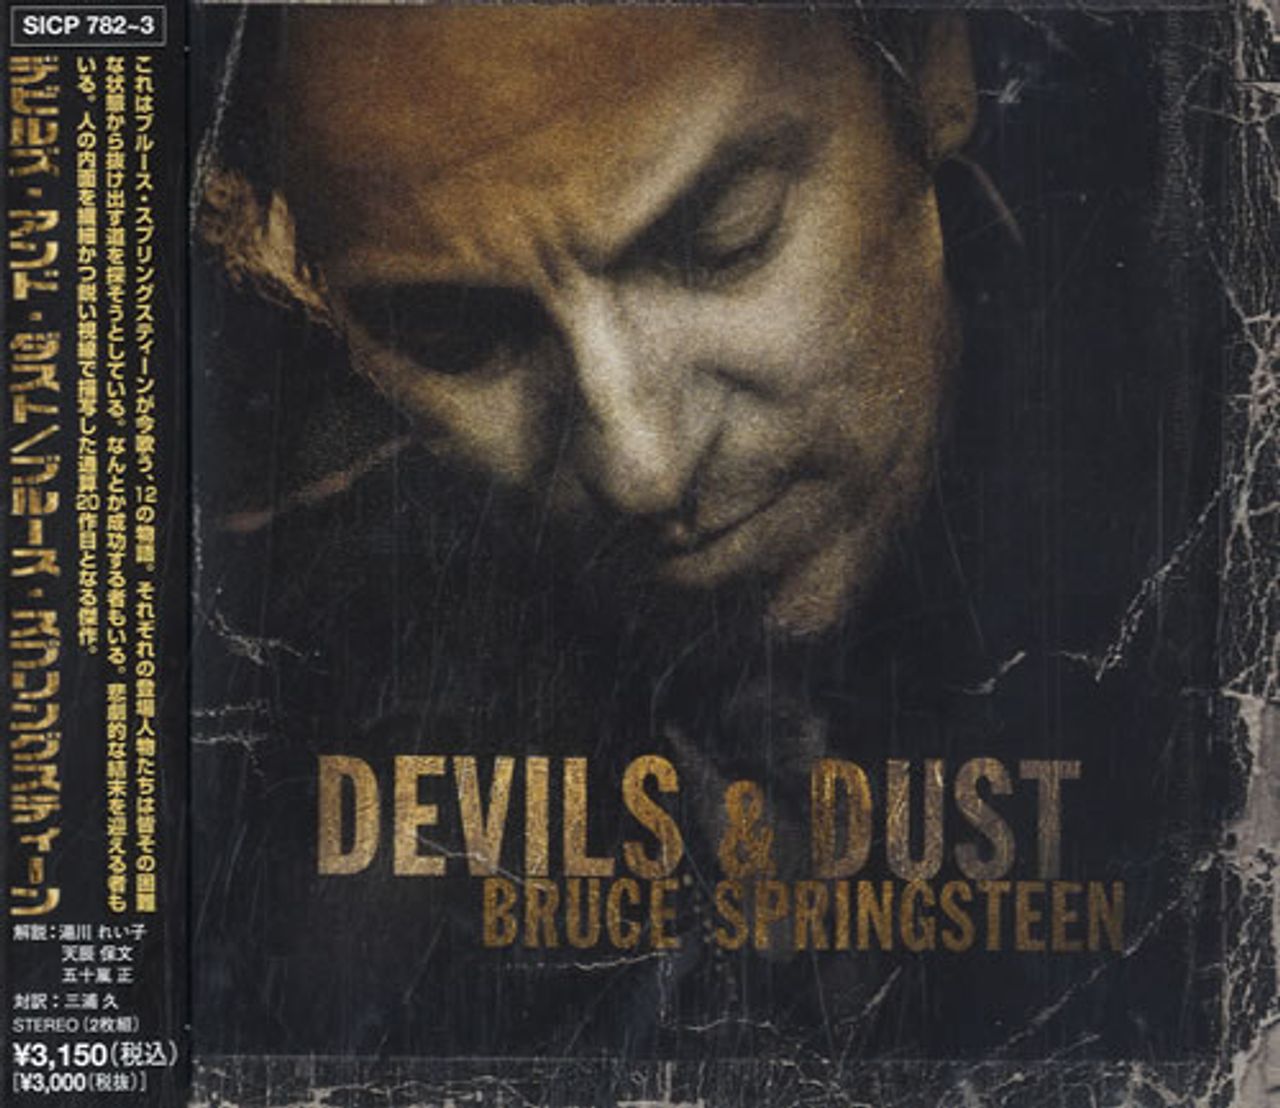 Bruce Springsteen Devils & Dust Japanese 2-disc CD/DVD set SICP782~3